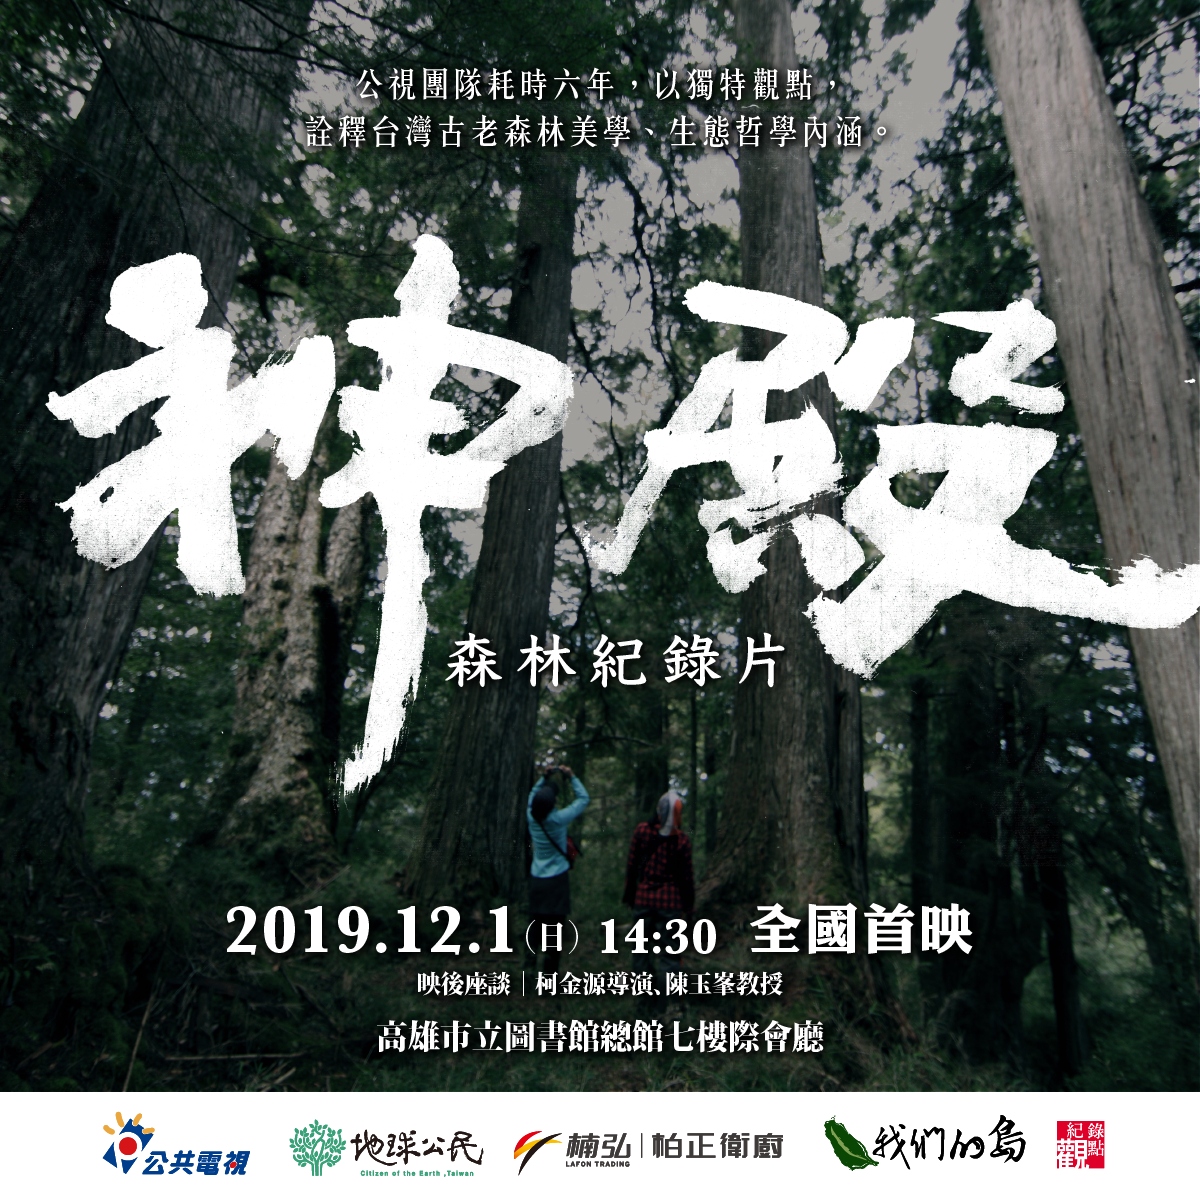 12 1 神殿 森林紀錄片高雄首映會 地球公民基金會